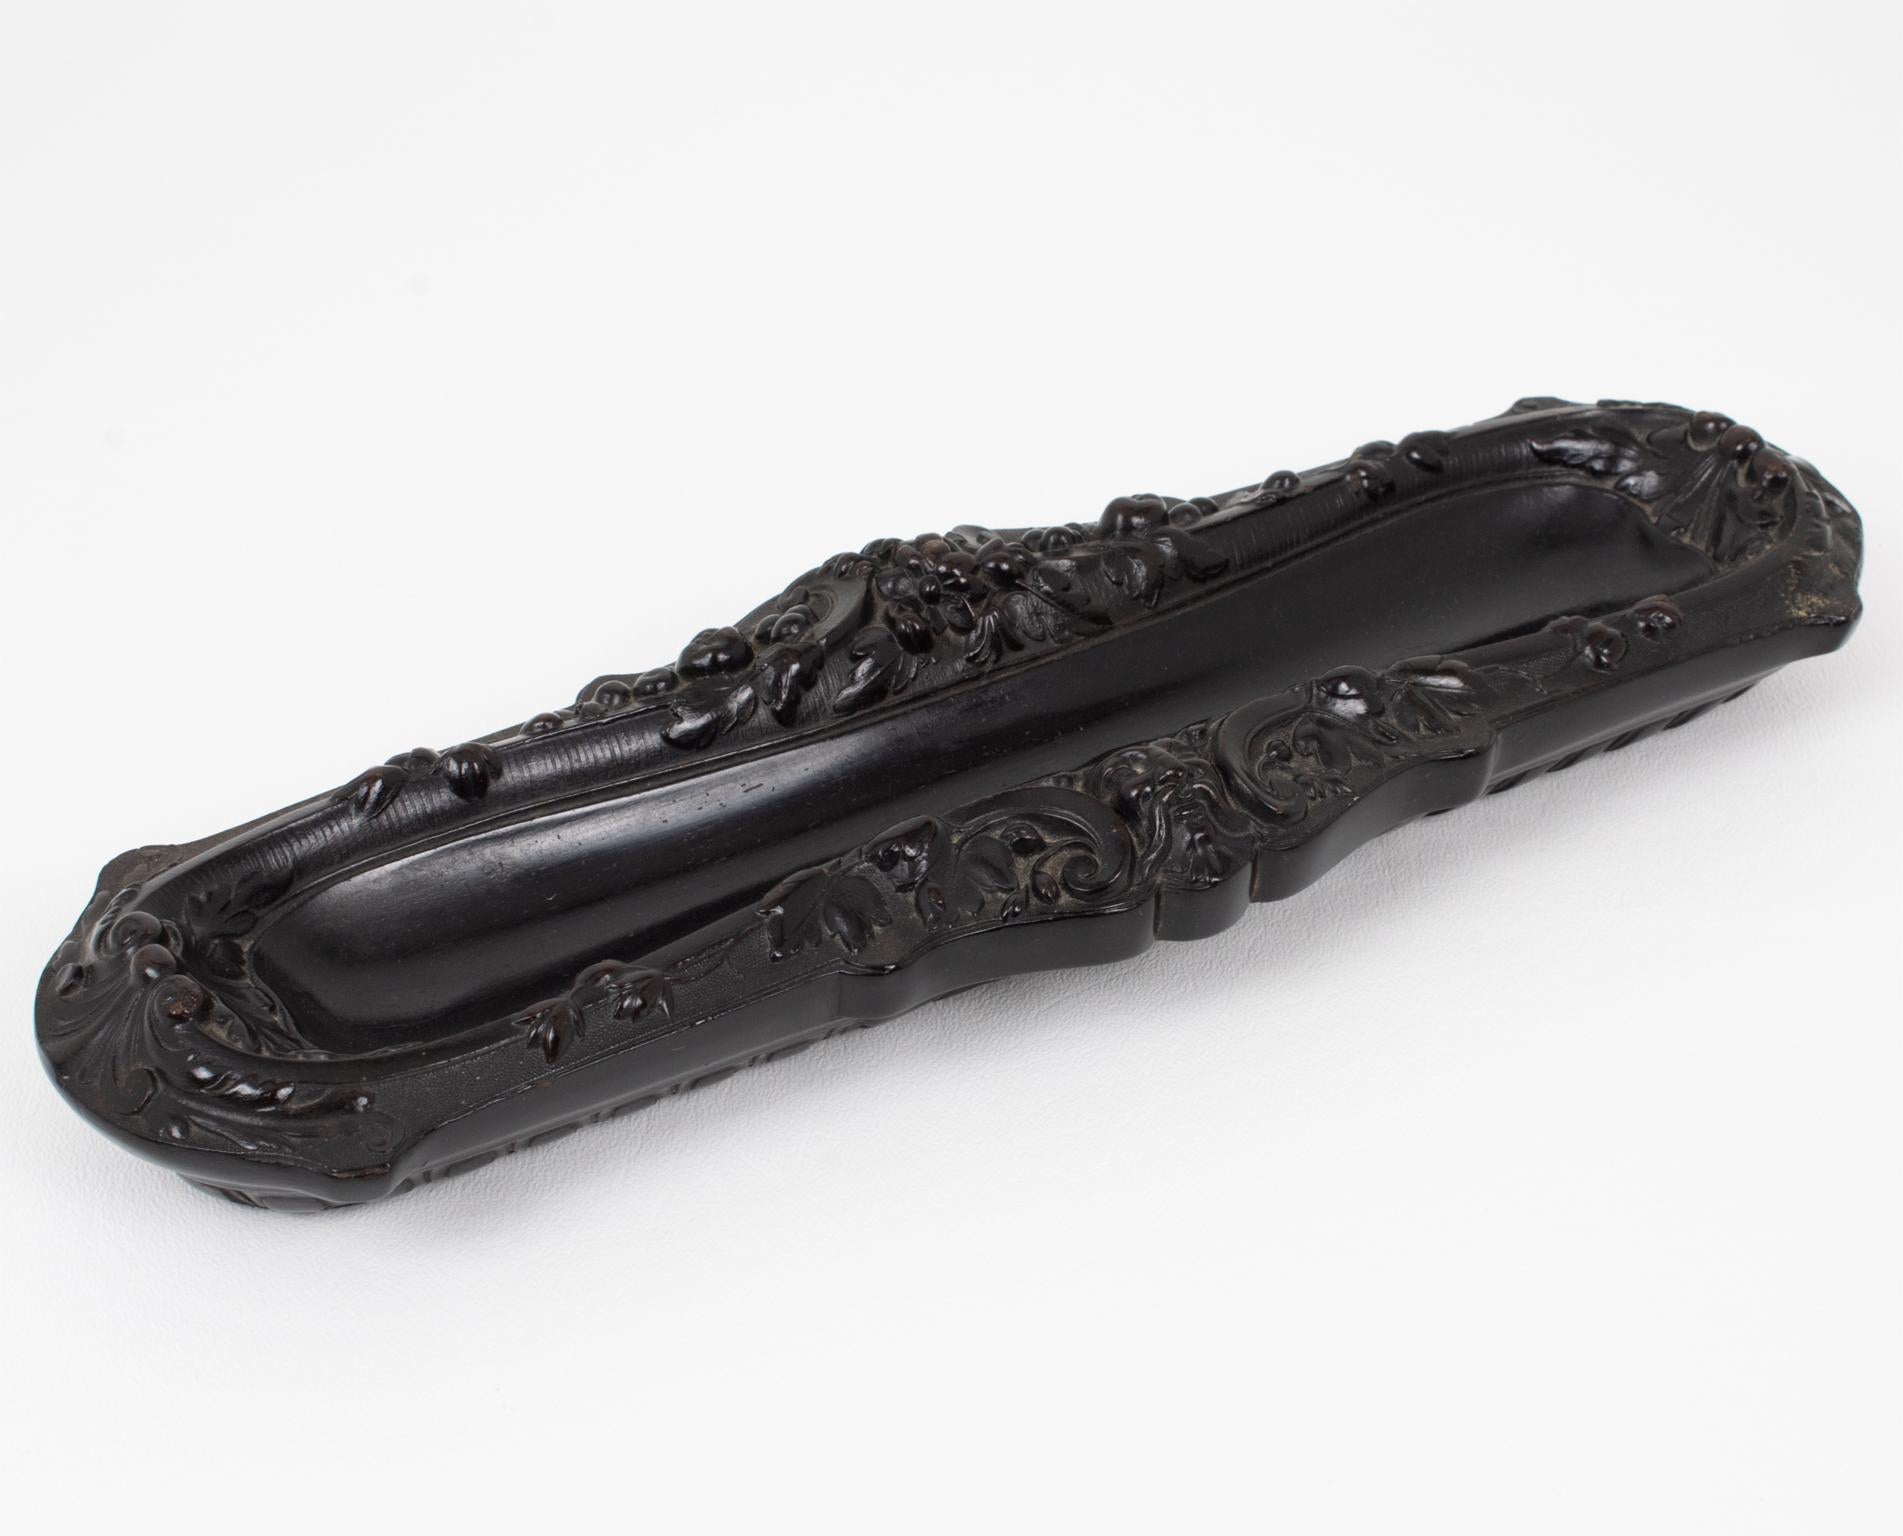 Ce superbe porte-plume en gutta-percha Napoléon III a été fabriqué à la main en France dans les années 1880. Cet accessoire de bureau ancien est délicieusement fabriqué avec des motifs moulés différents de chaque côté et une ornementation délicate